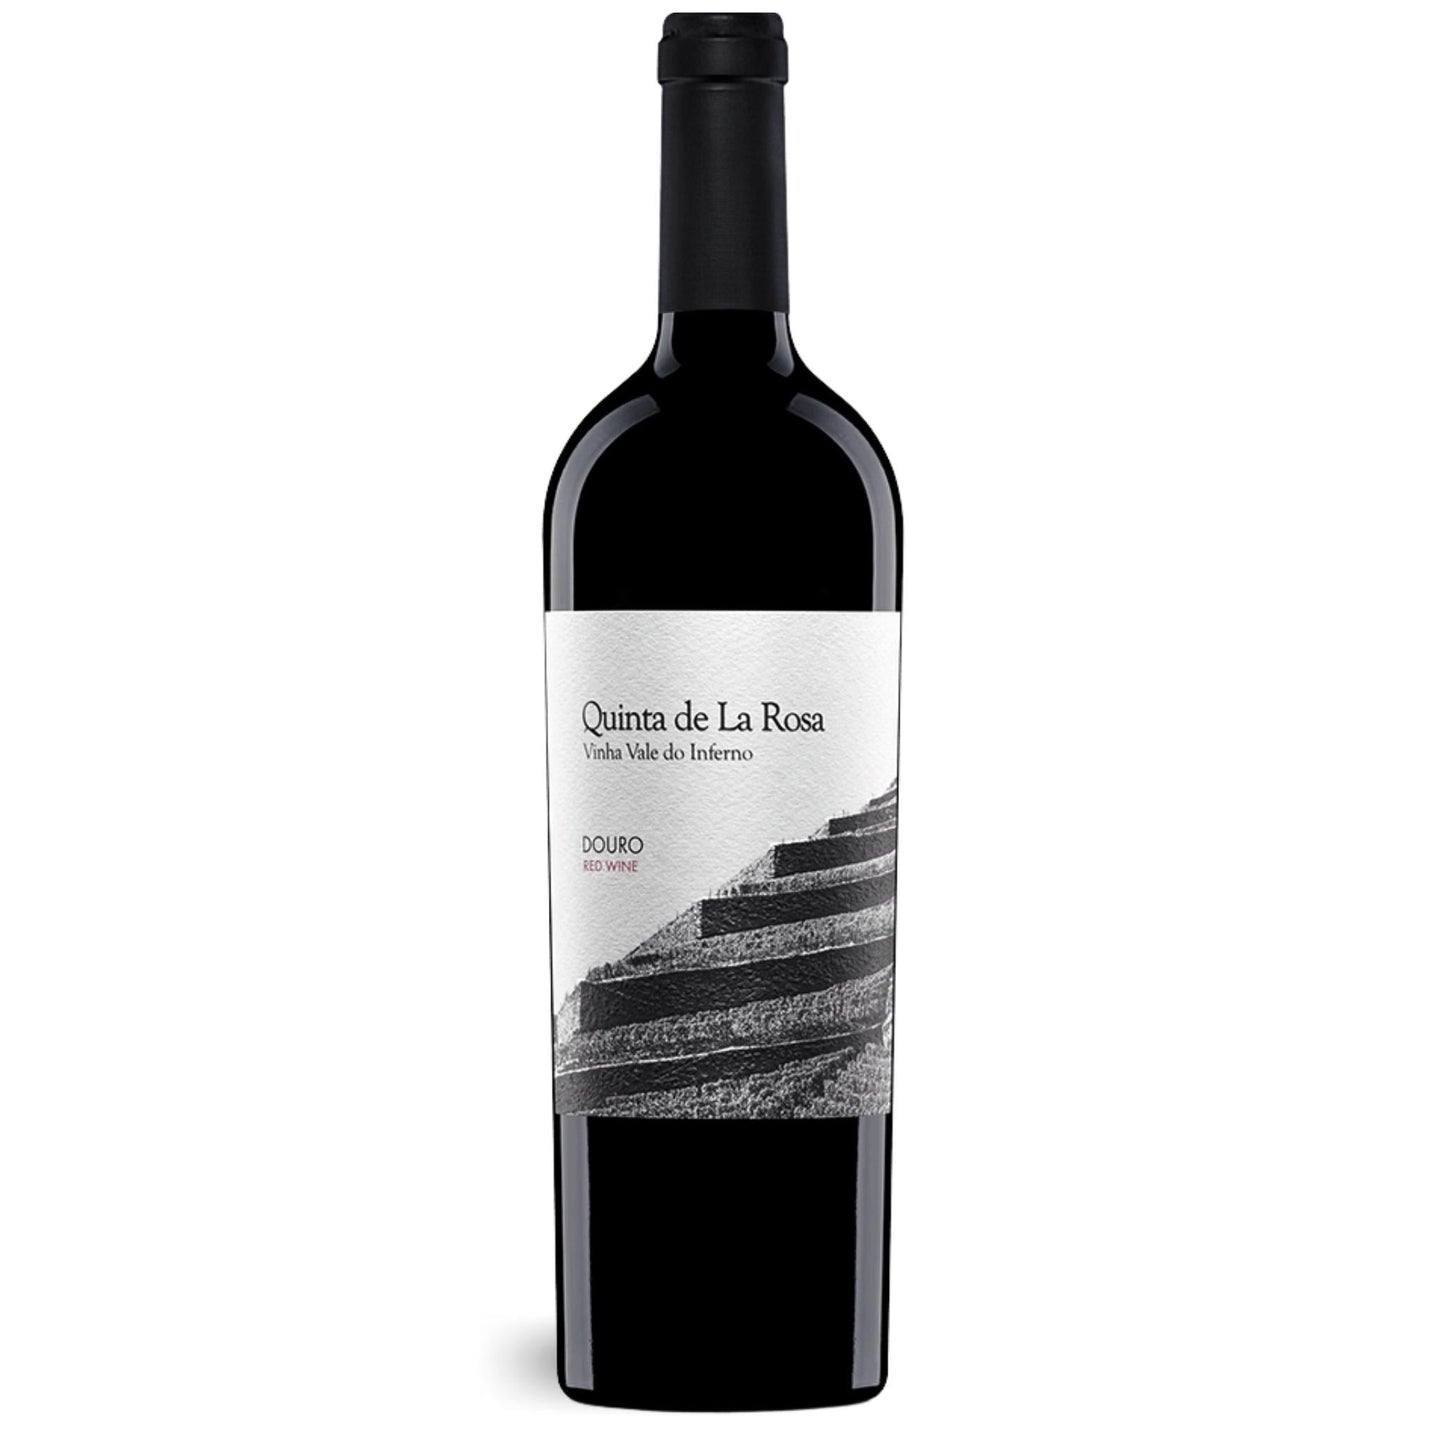 Vinha Vale do Inferno, ein Rotwein vom Weingut Quinta de la Rosa aus dem Douro/Portugal.